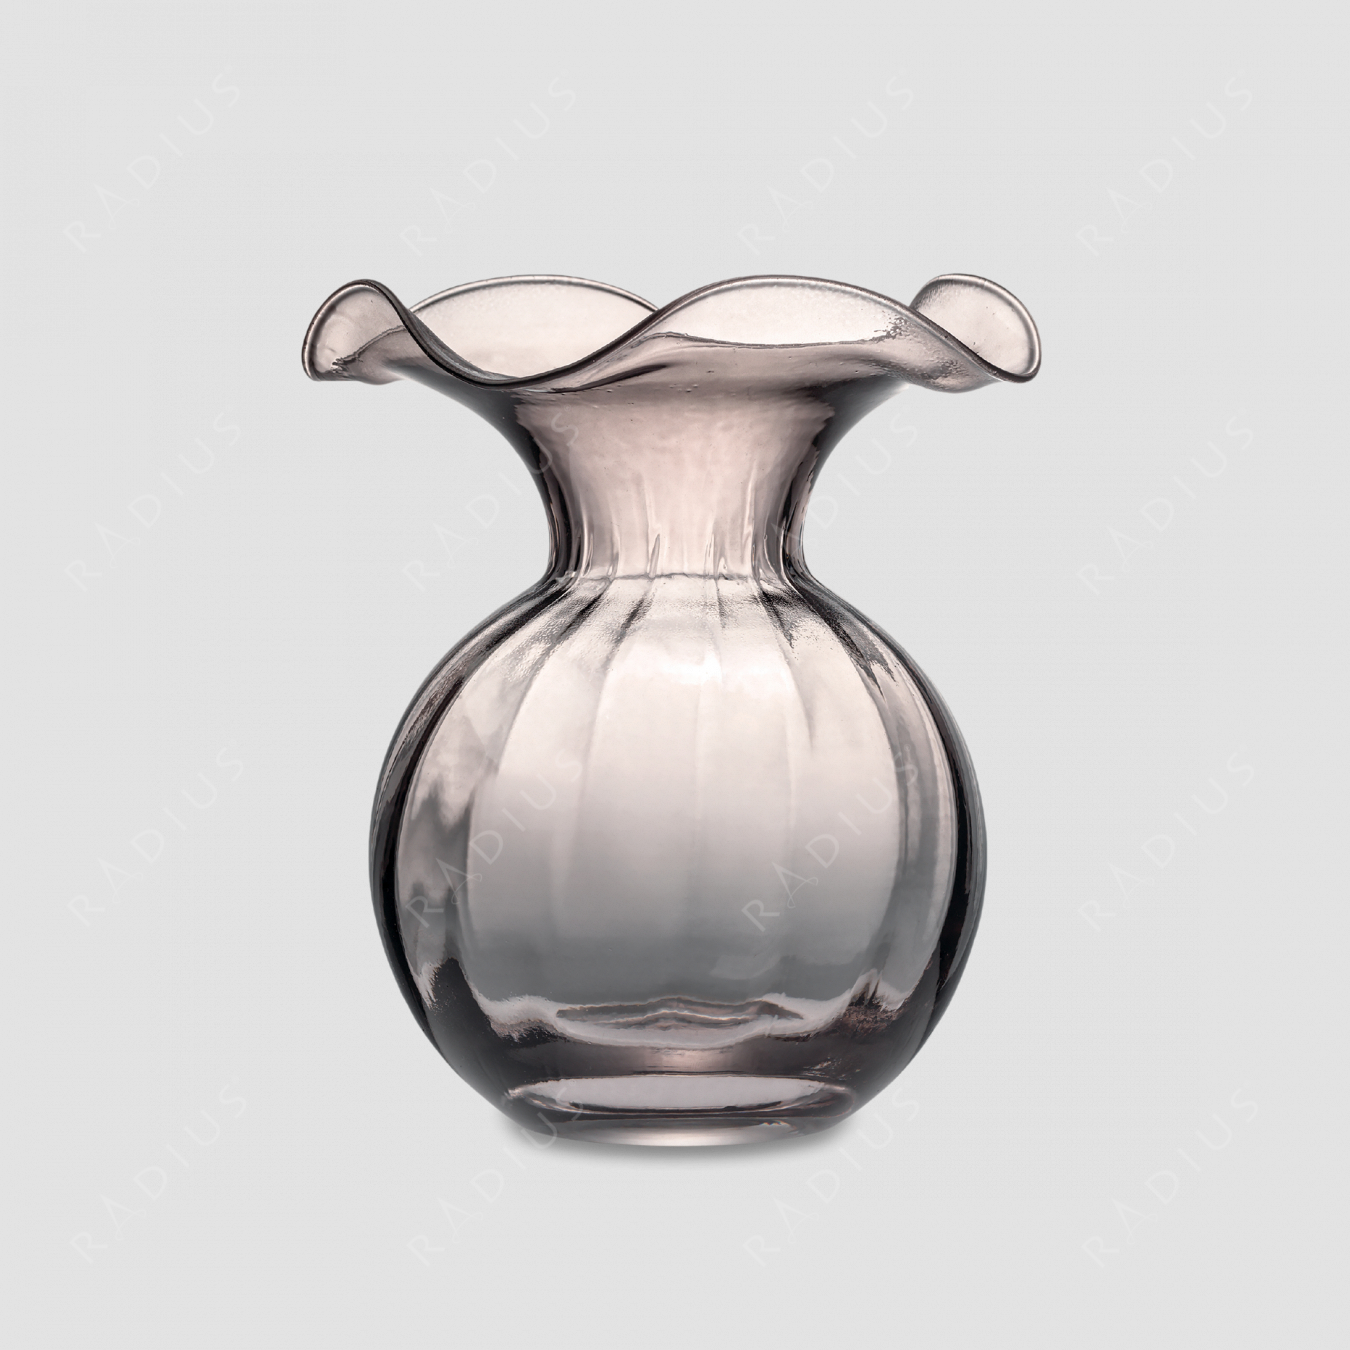 Стеклянная ваза для цветов, диаметр: 15 см, высота: 18 см, материал: стекло, цвет: дымчатый, серия Primula, IVV (Italy), Италия